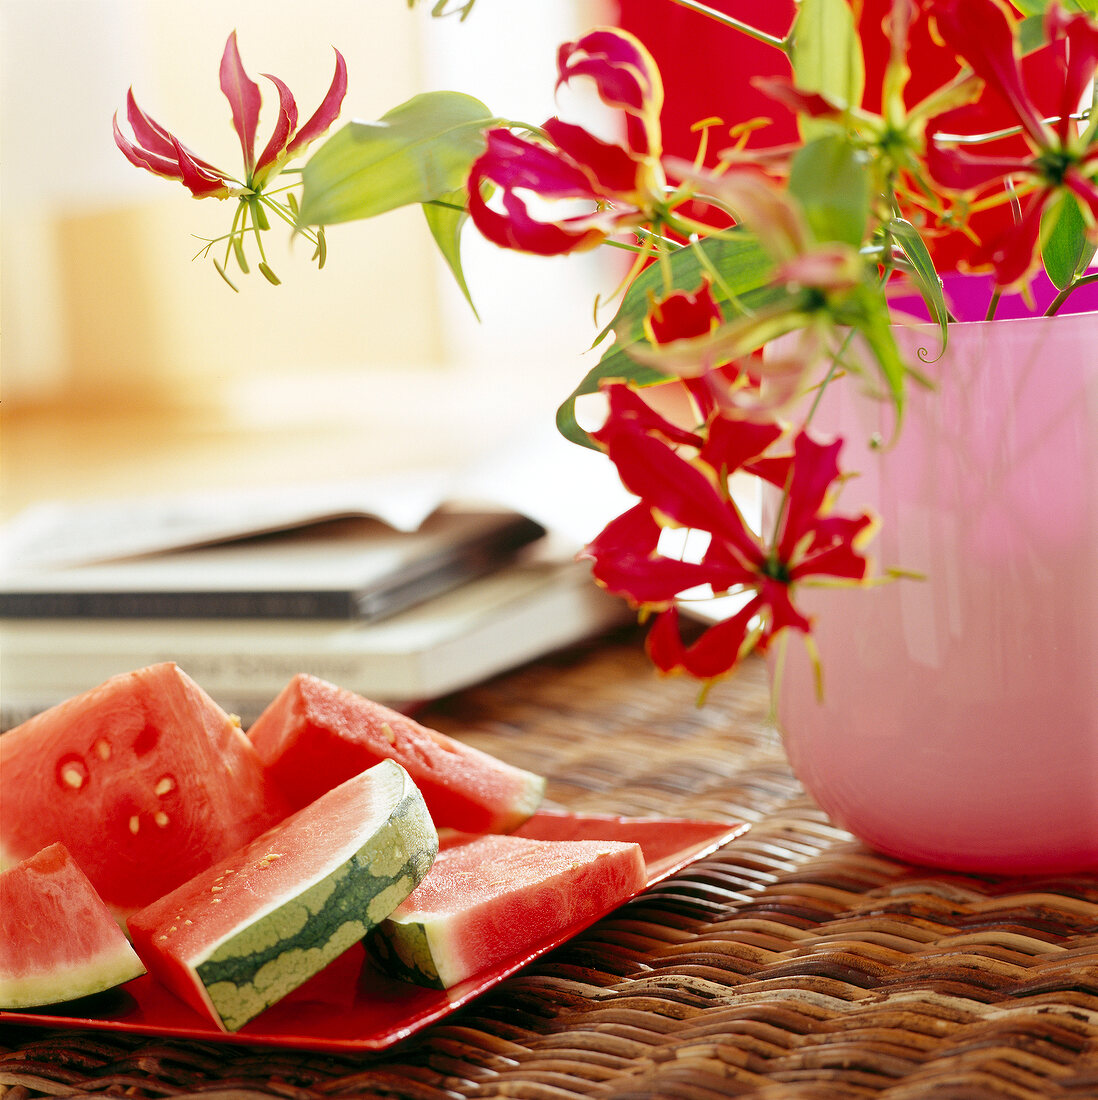 Melonenstücke auf einem Teller neben einer Blume auf einem Rattantisch.